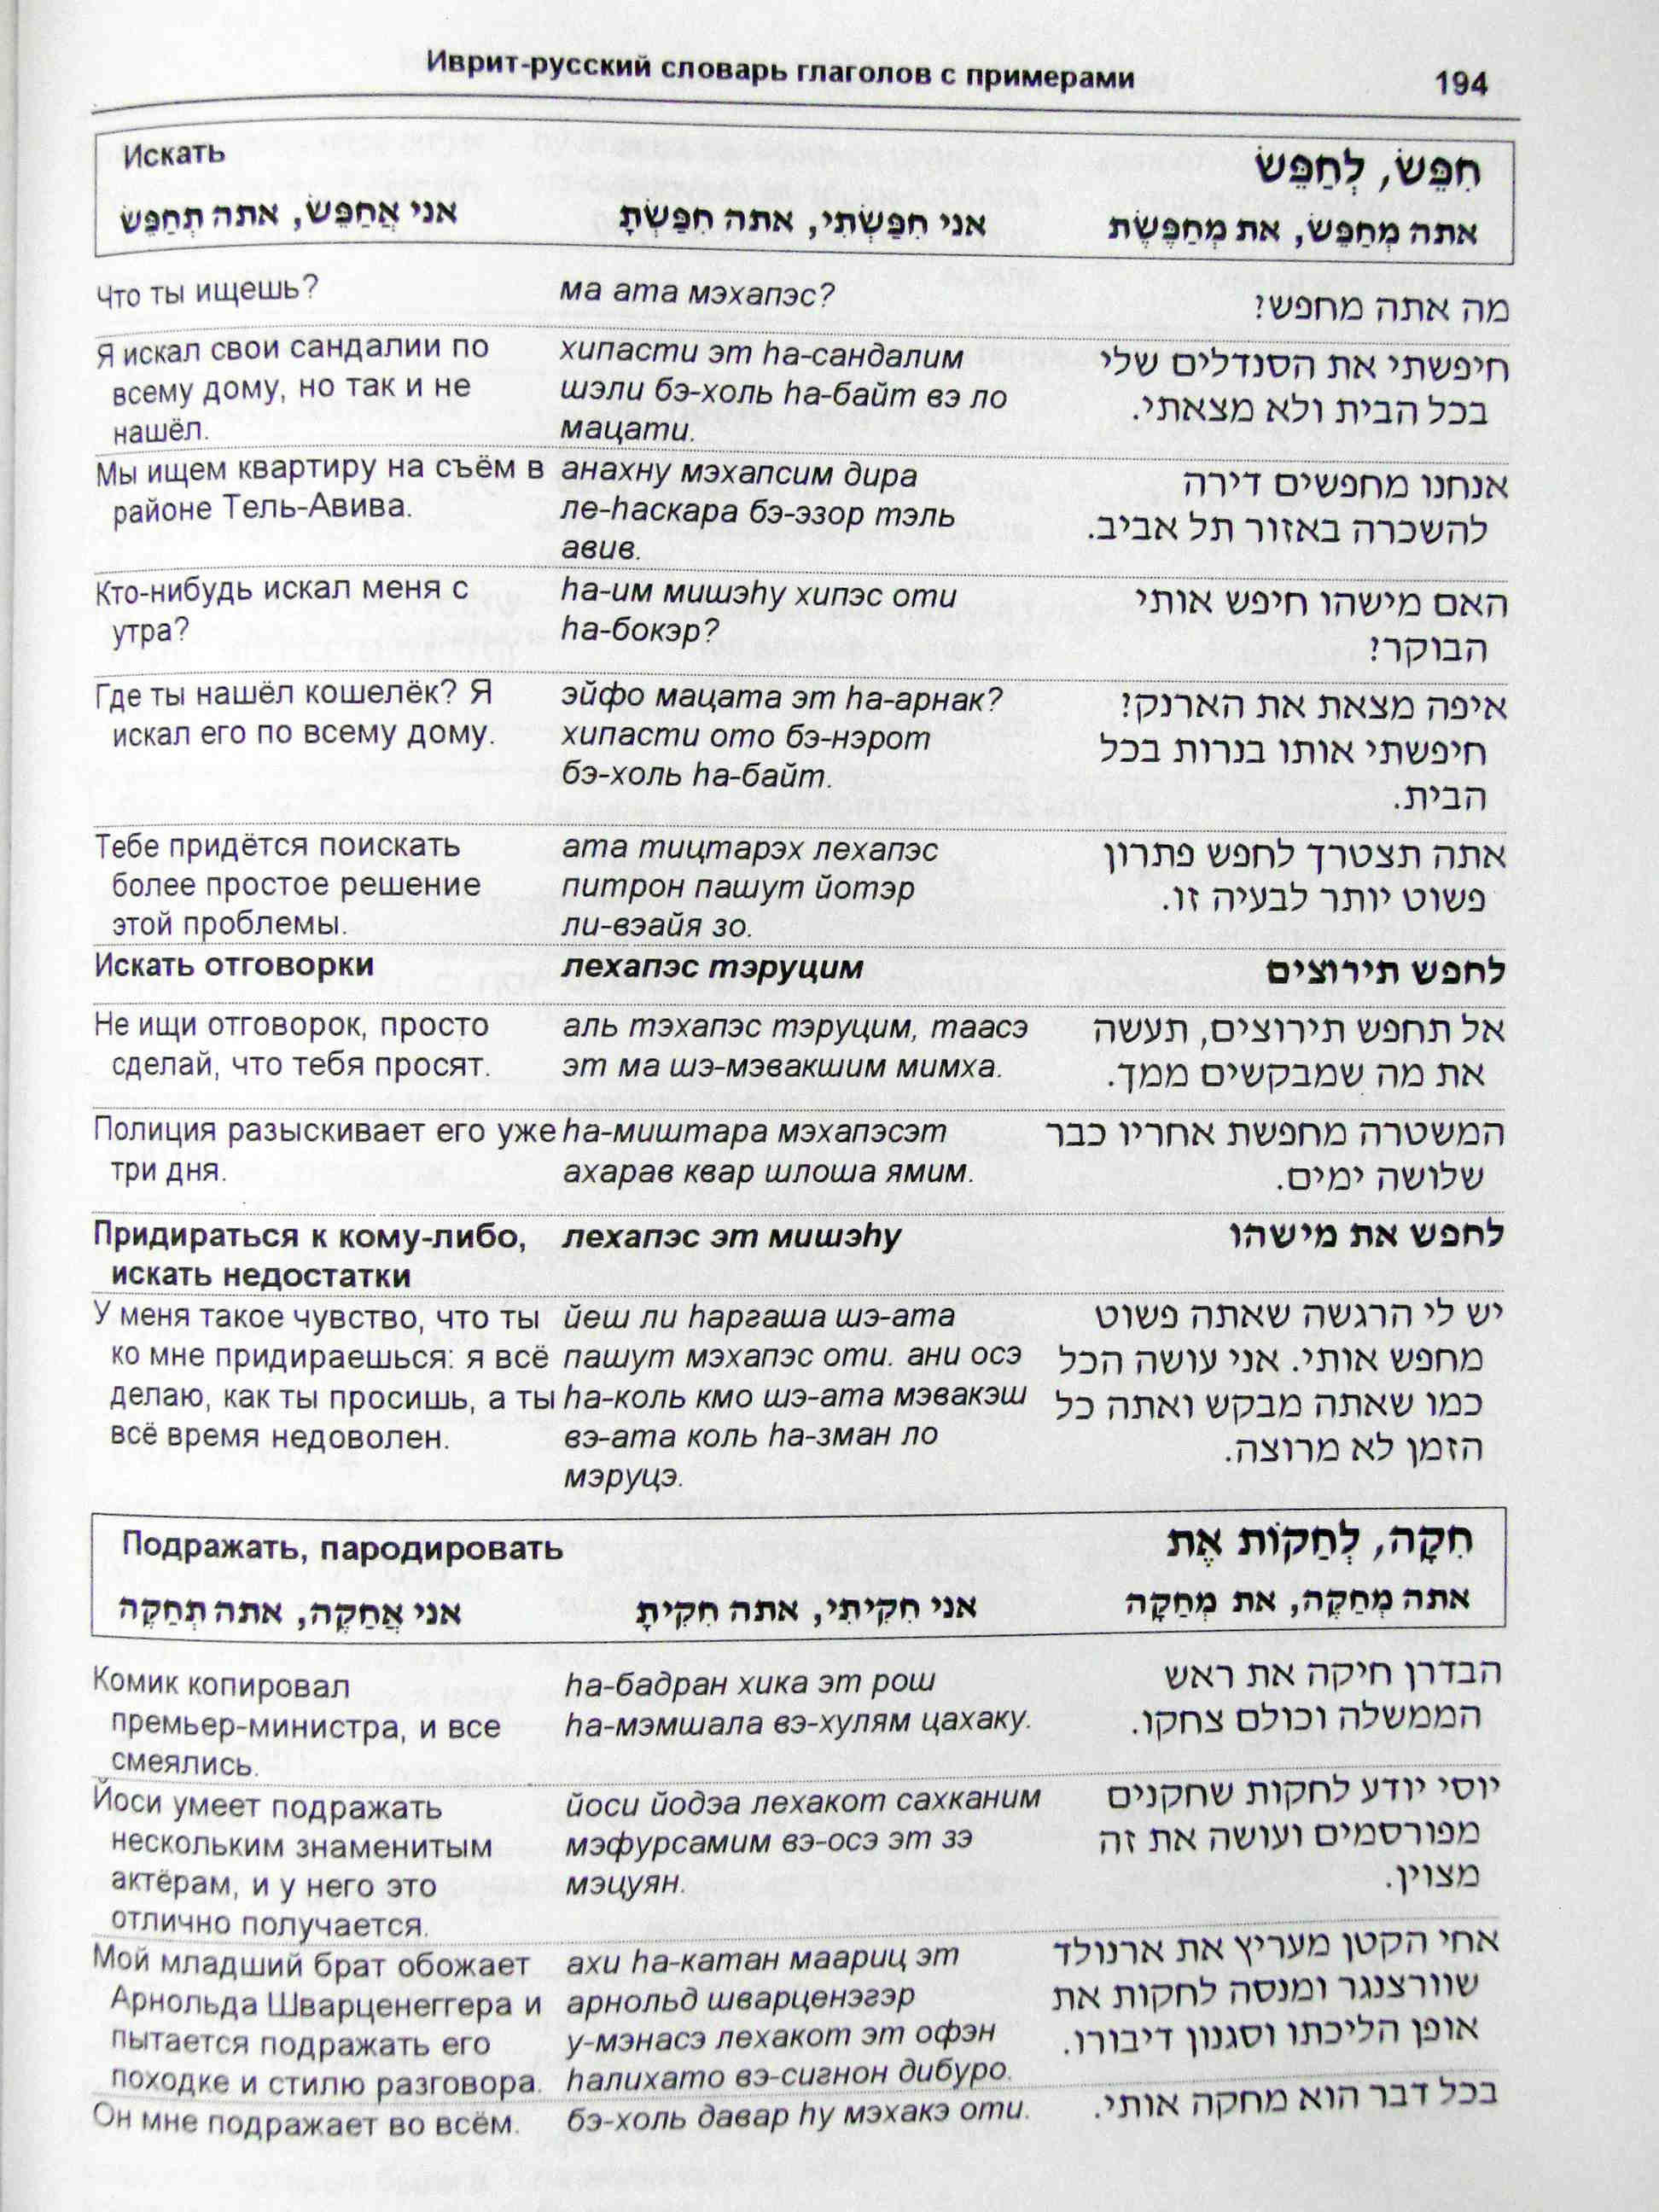 Глаголы Пааль в иврите список